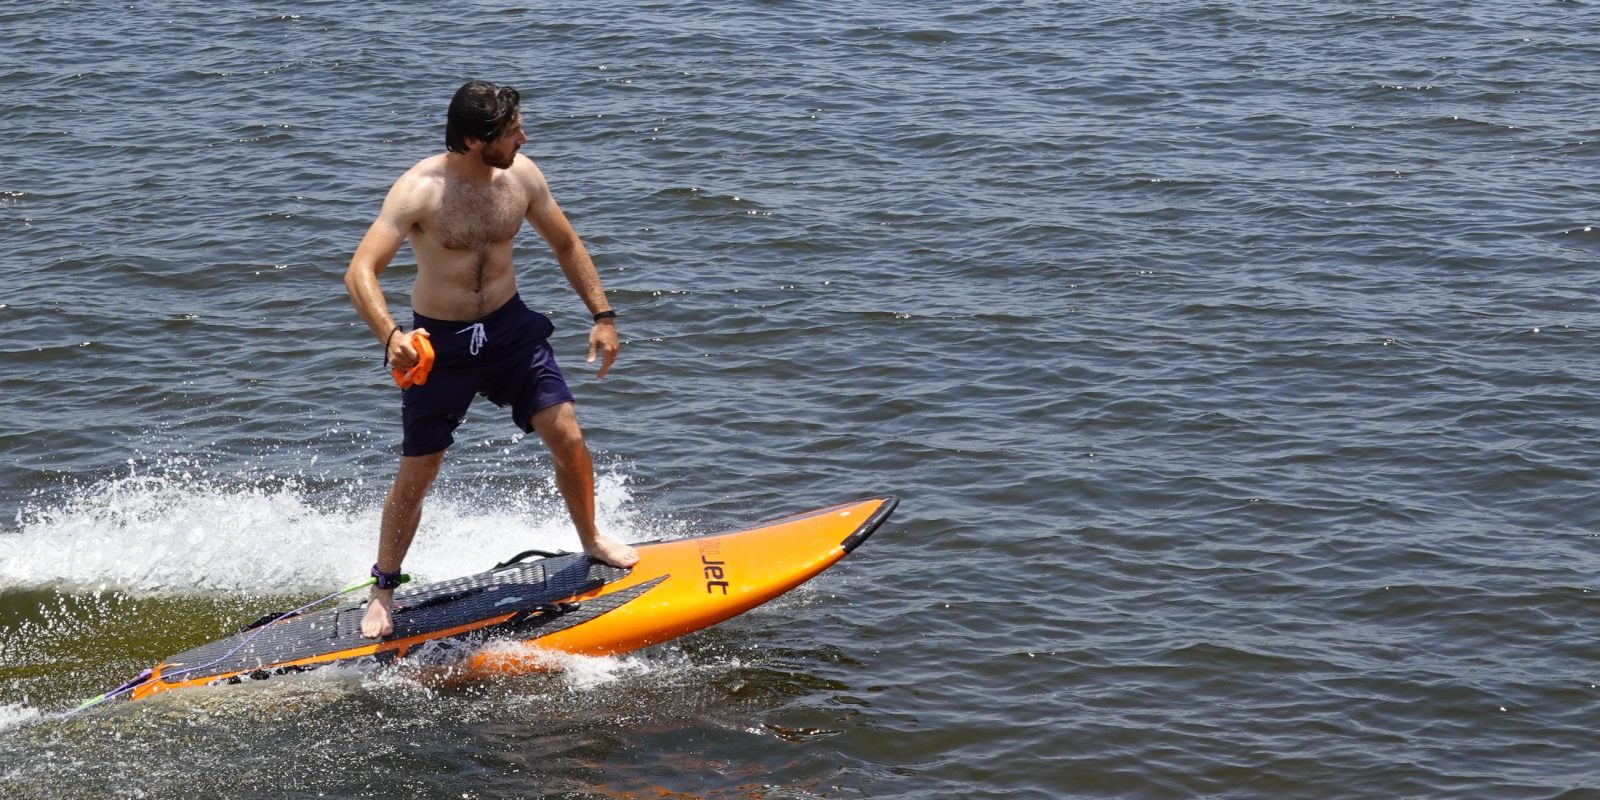 yujet electric surfboard